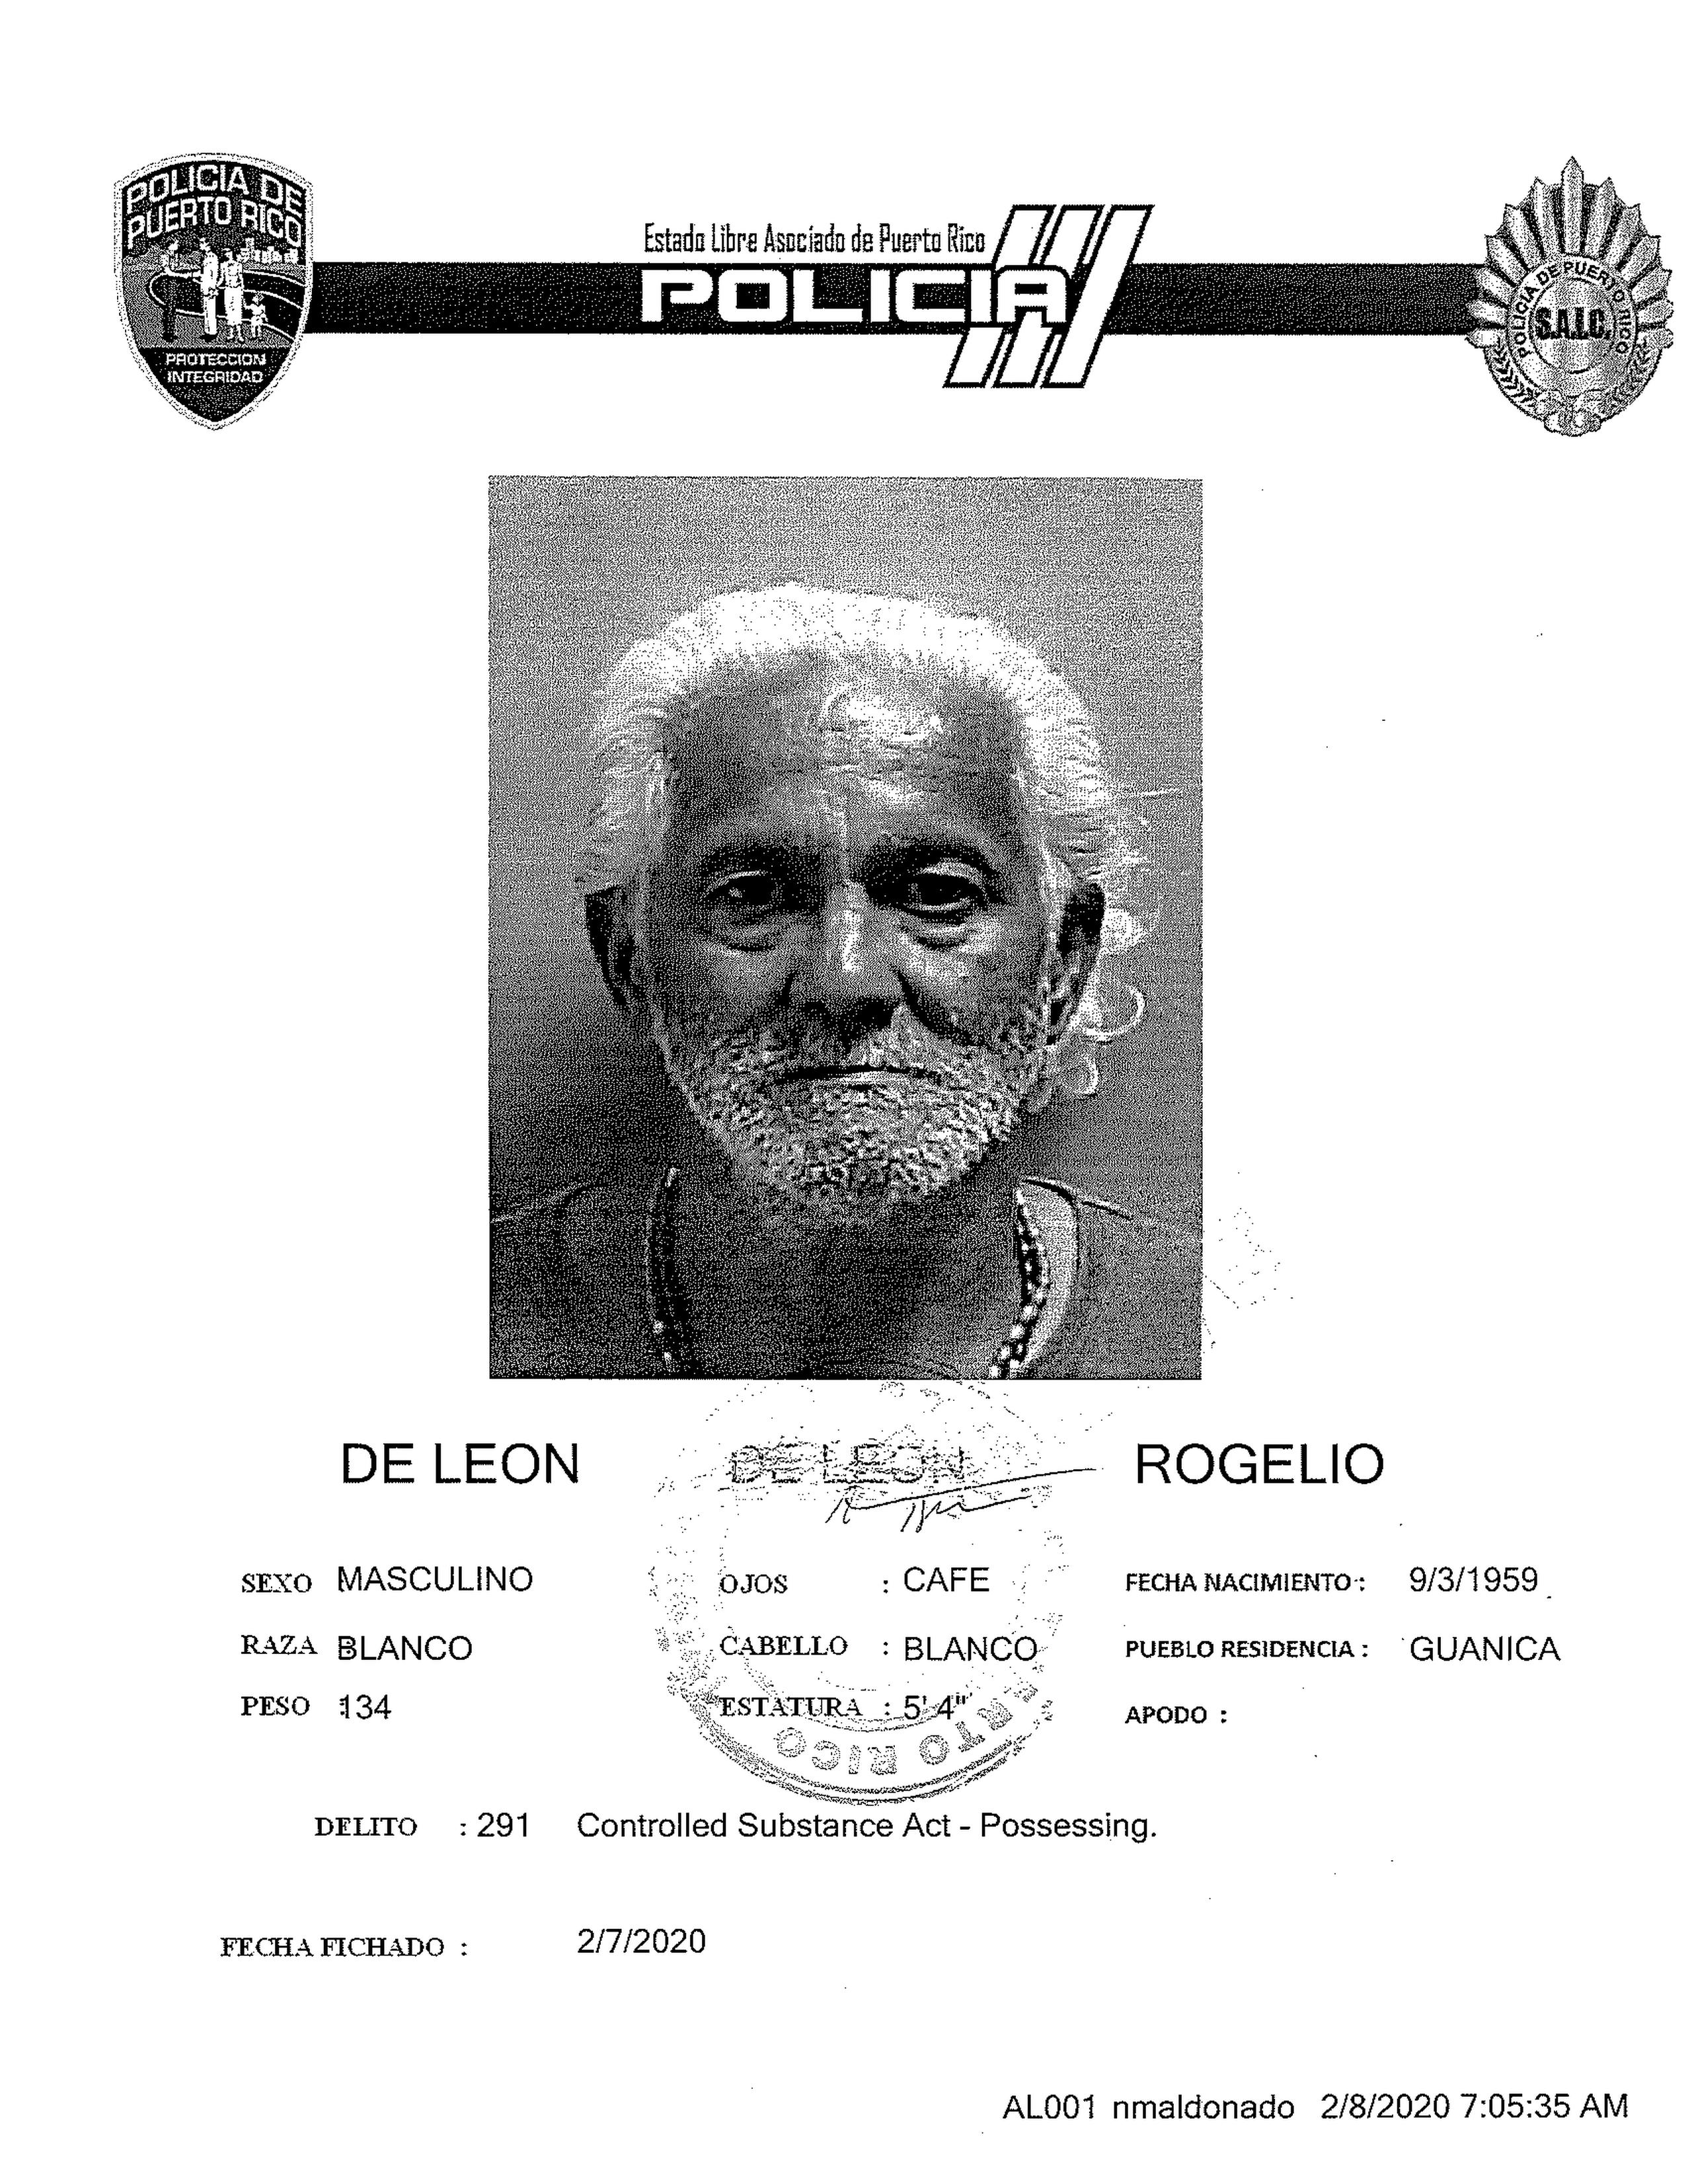 El arrestado tiene 60 años y es vecino de Guánica.